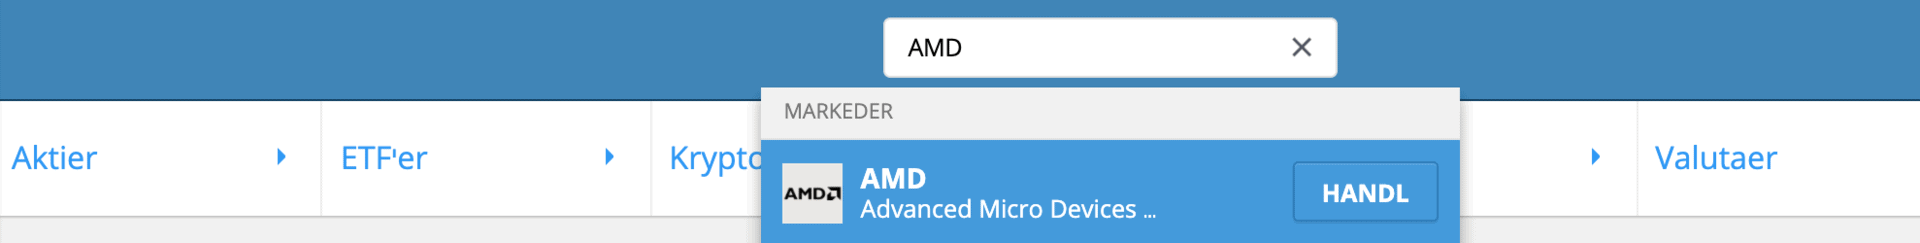 Soeg Efter AMD Aktier